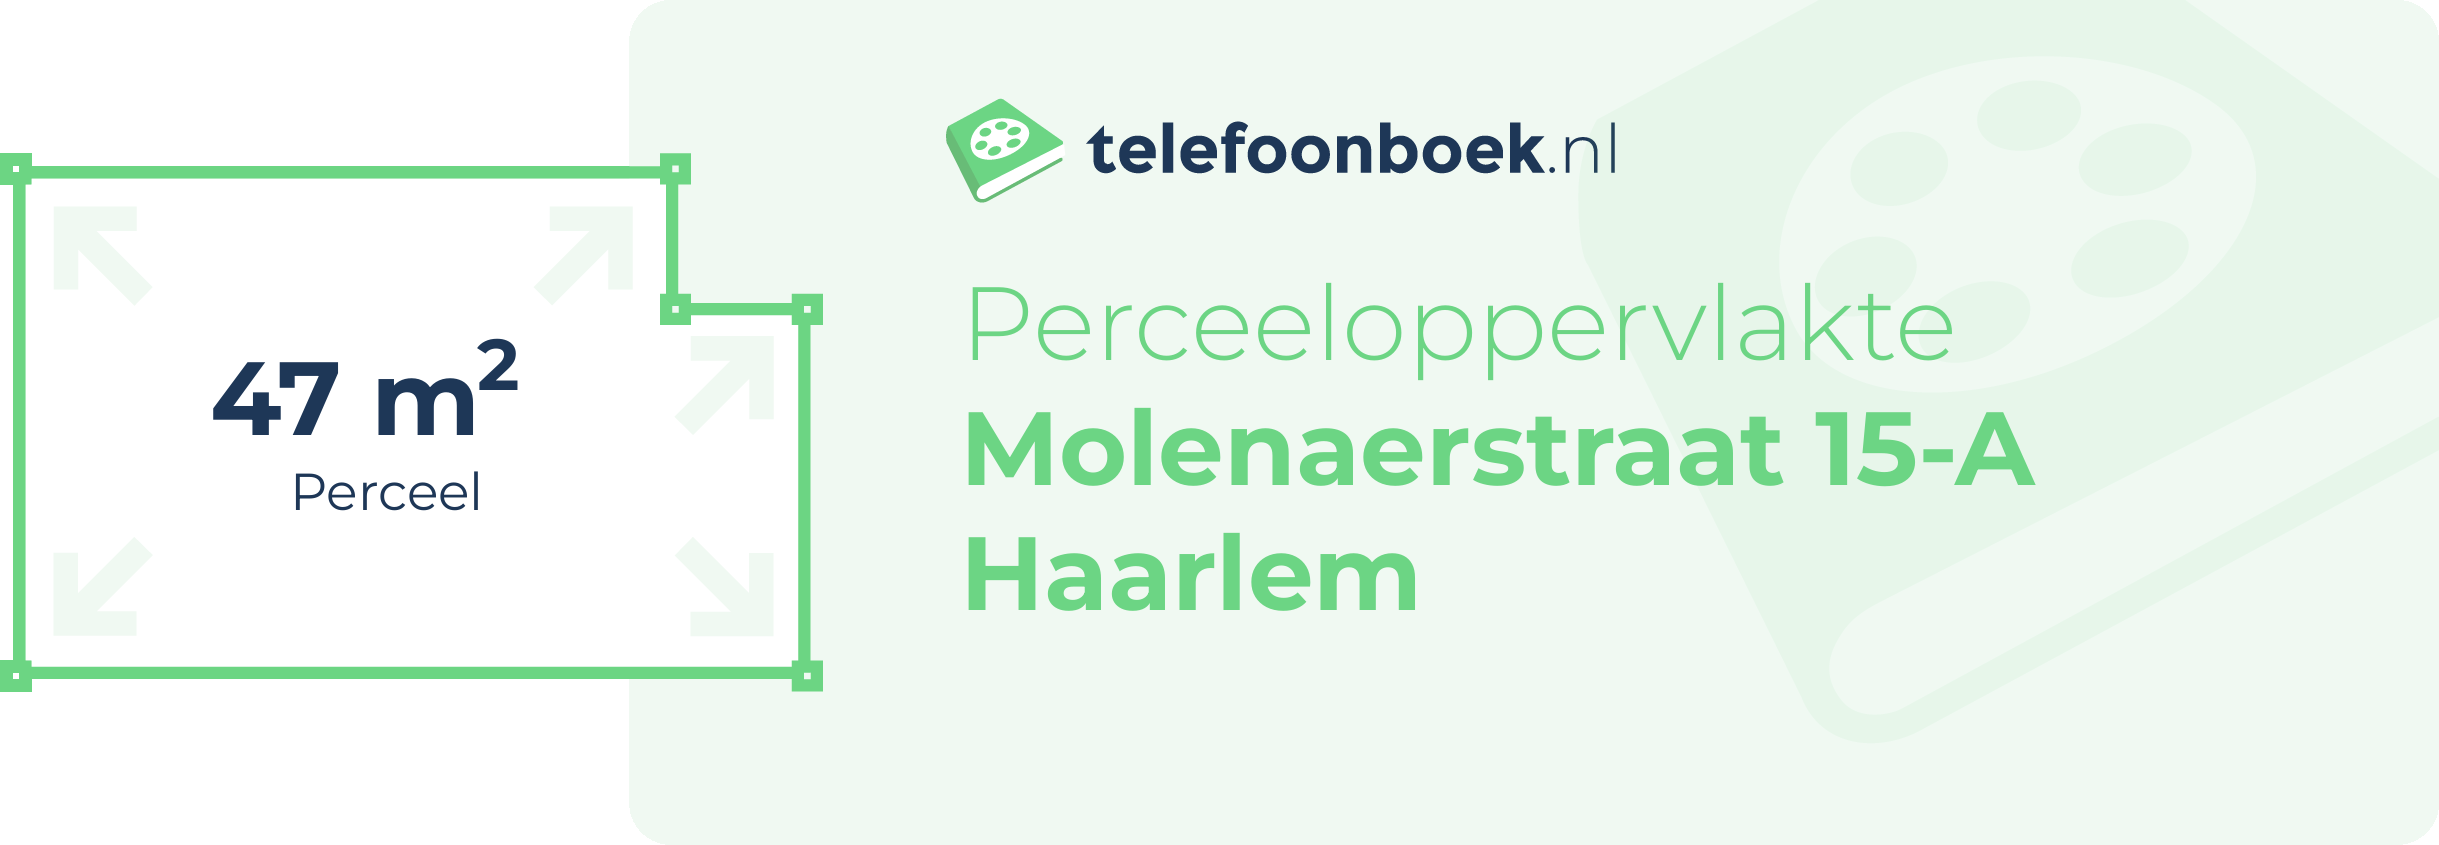 Perceeloppervlakte Molenaerstraat 15-A Haarlem